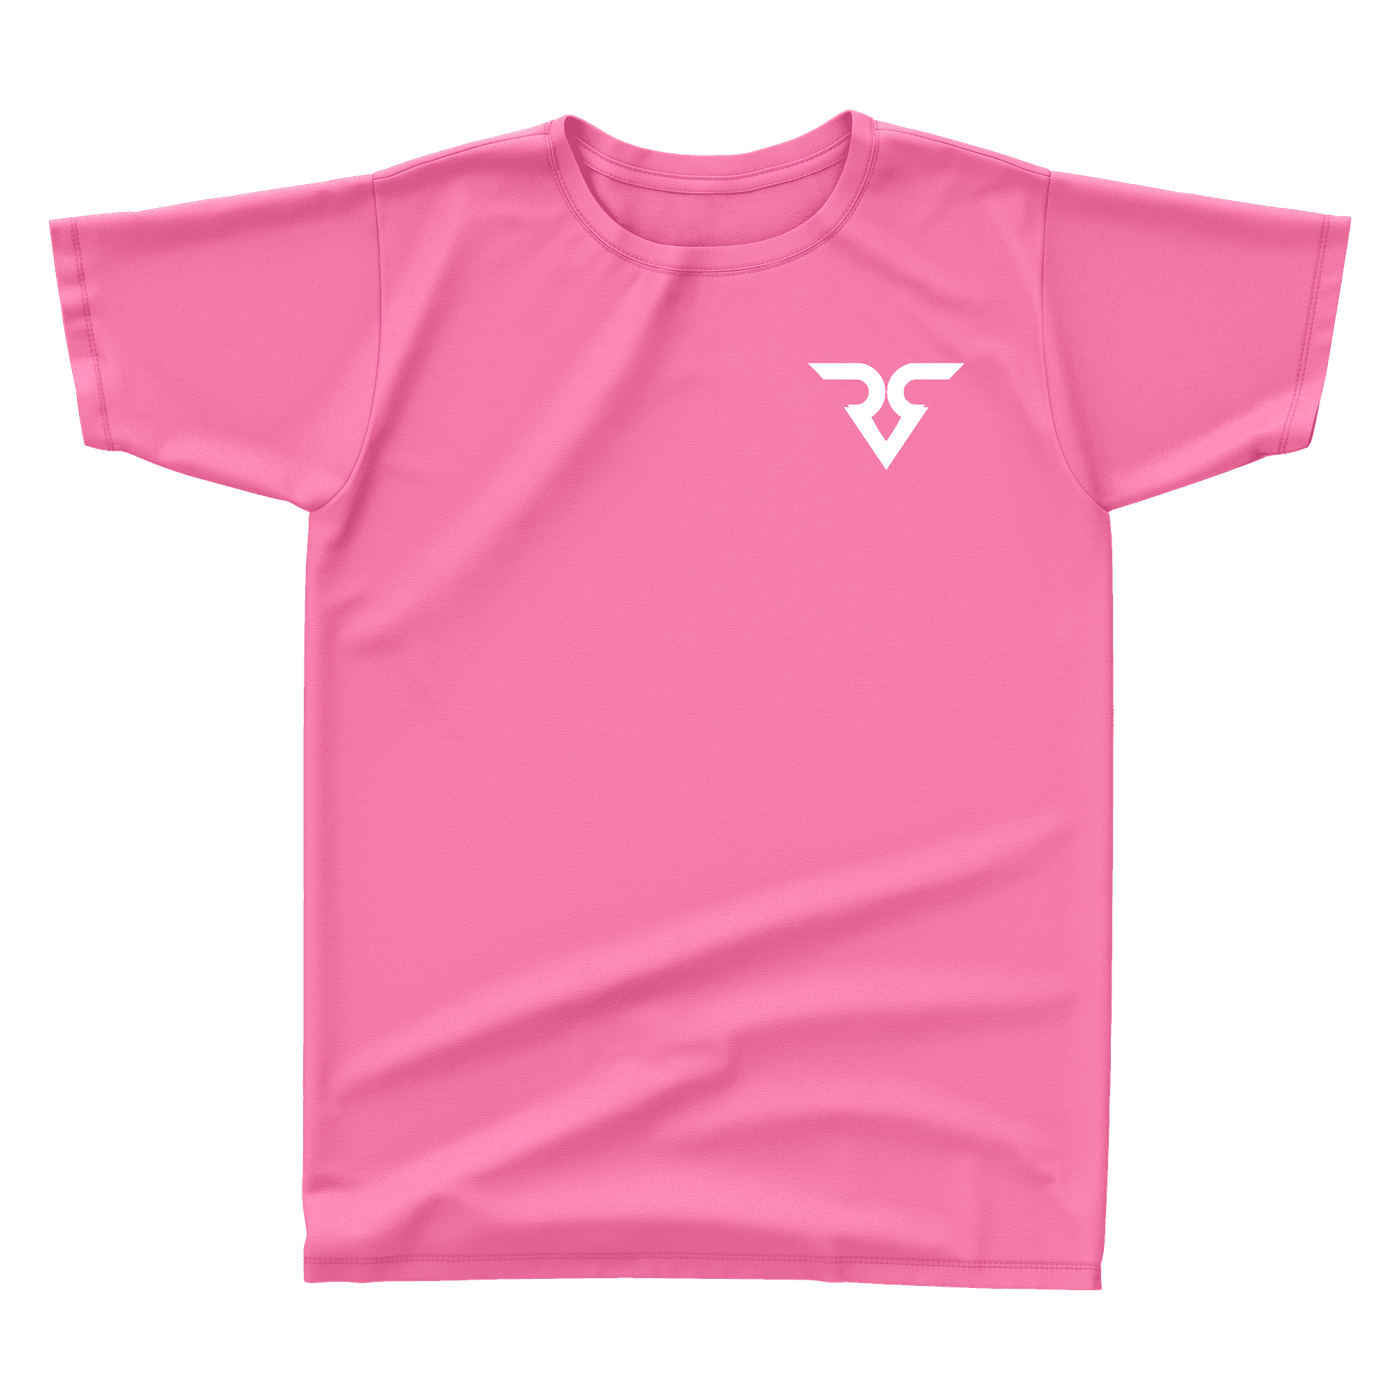 Risen Rose Unisex T-Shirt Pink